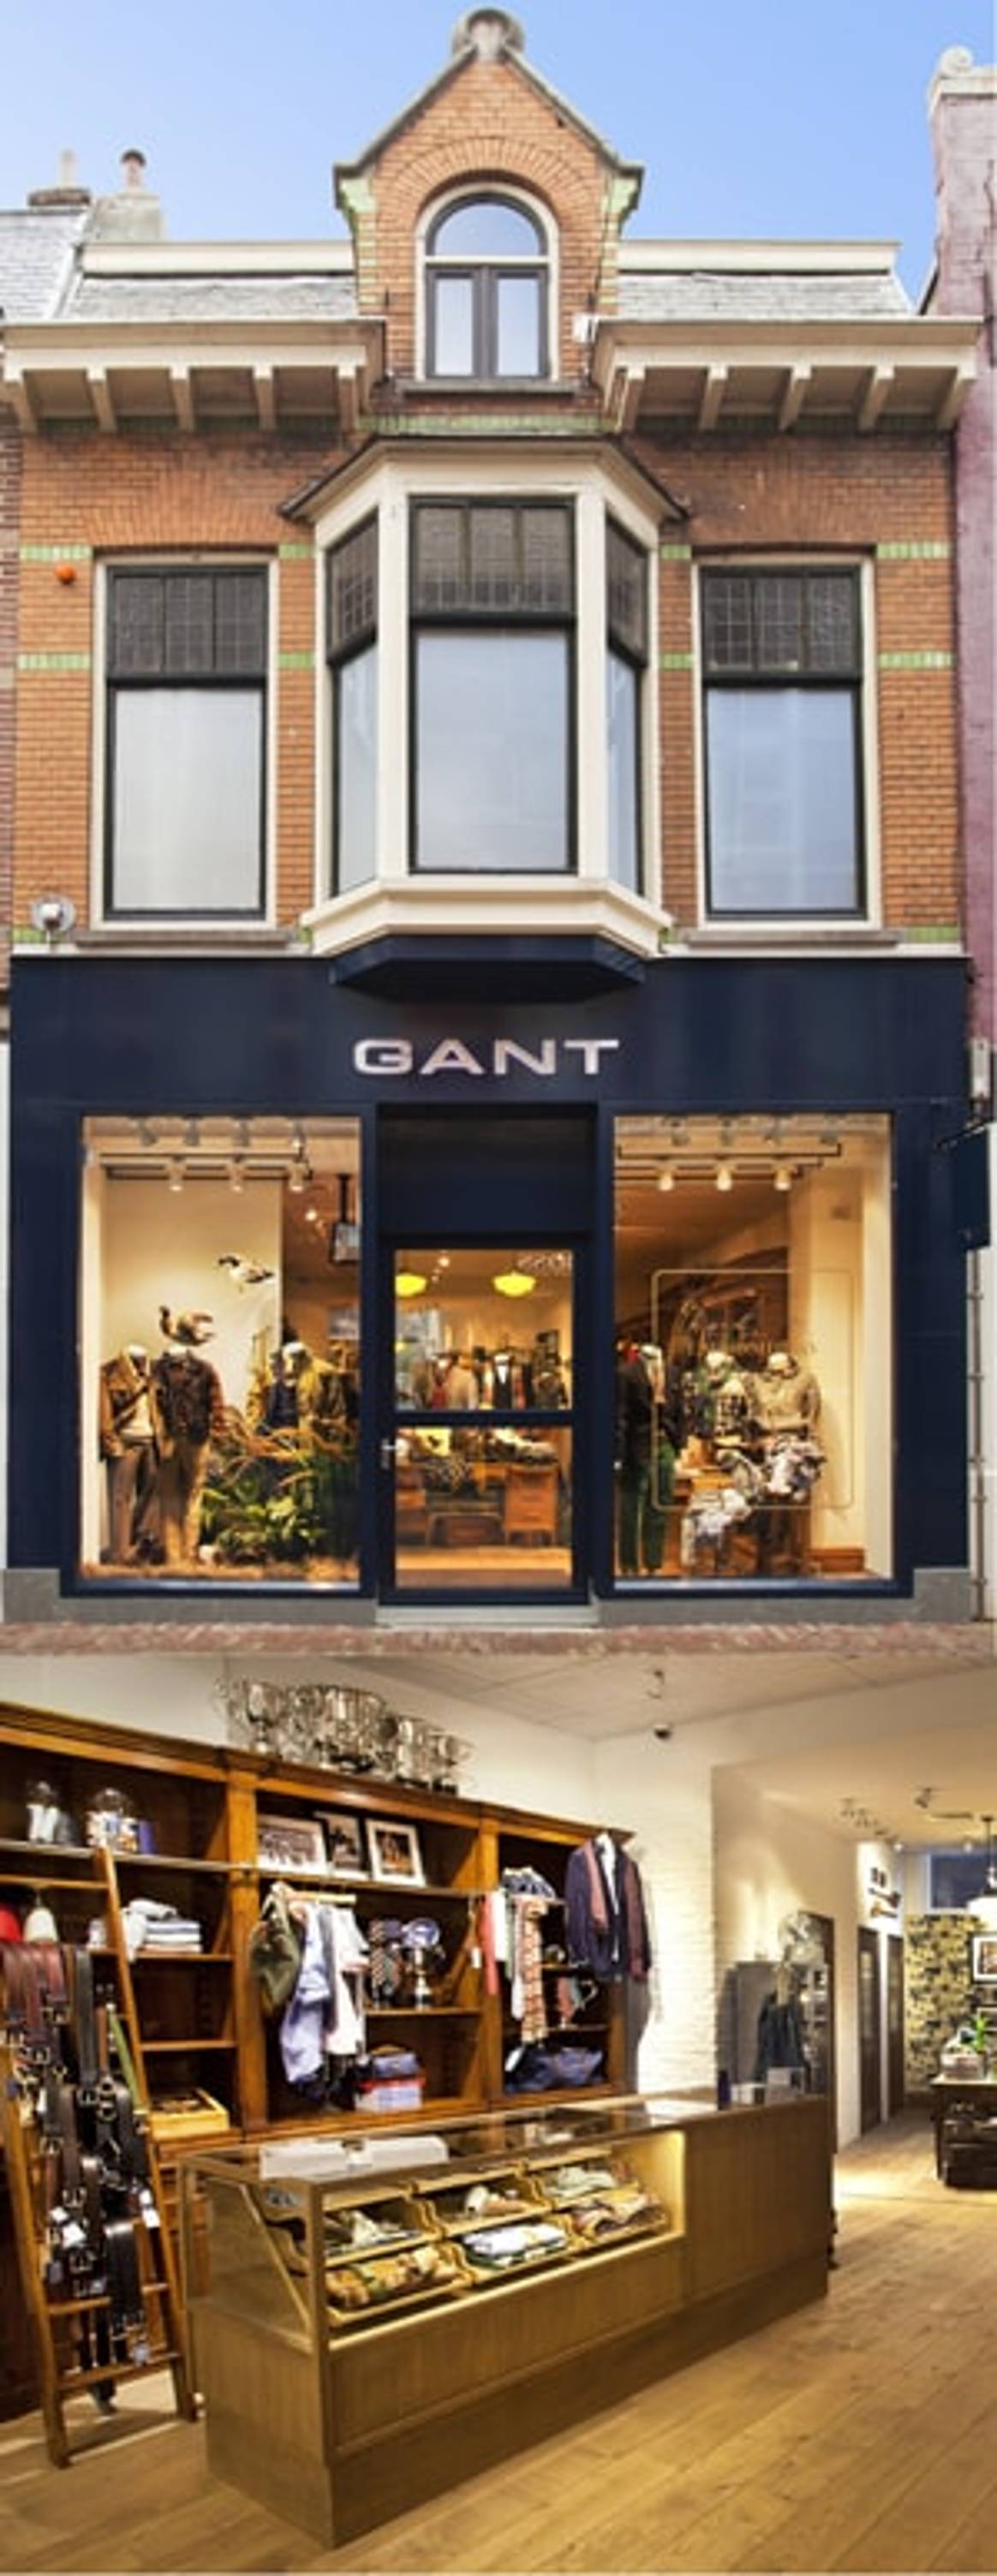 Gant: 'groeidiamant' Rugger naar Haarlem